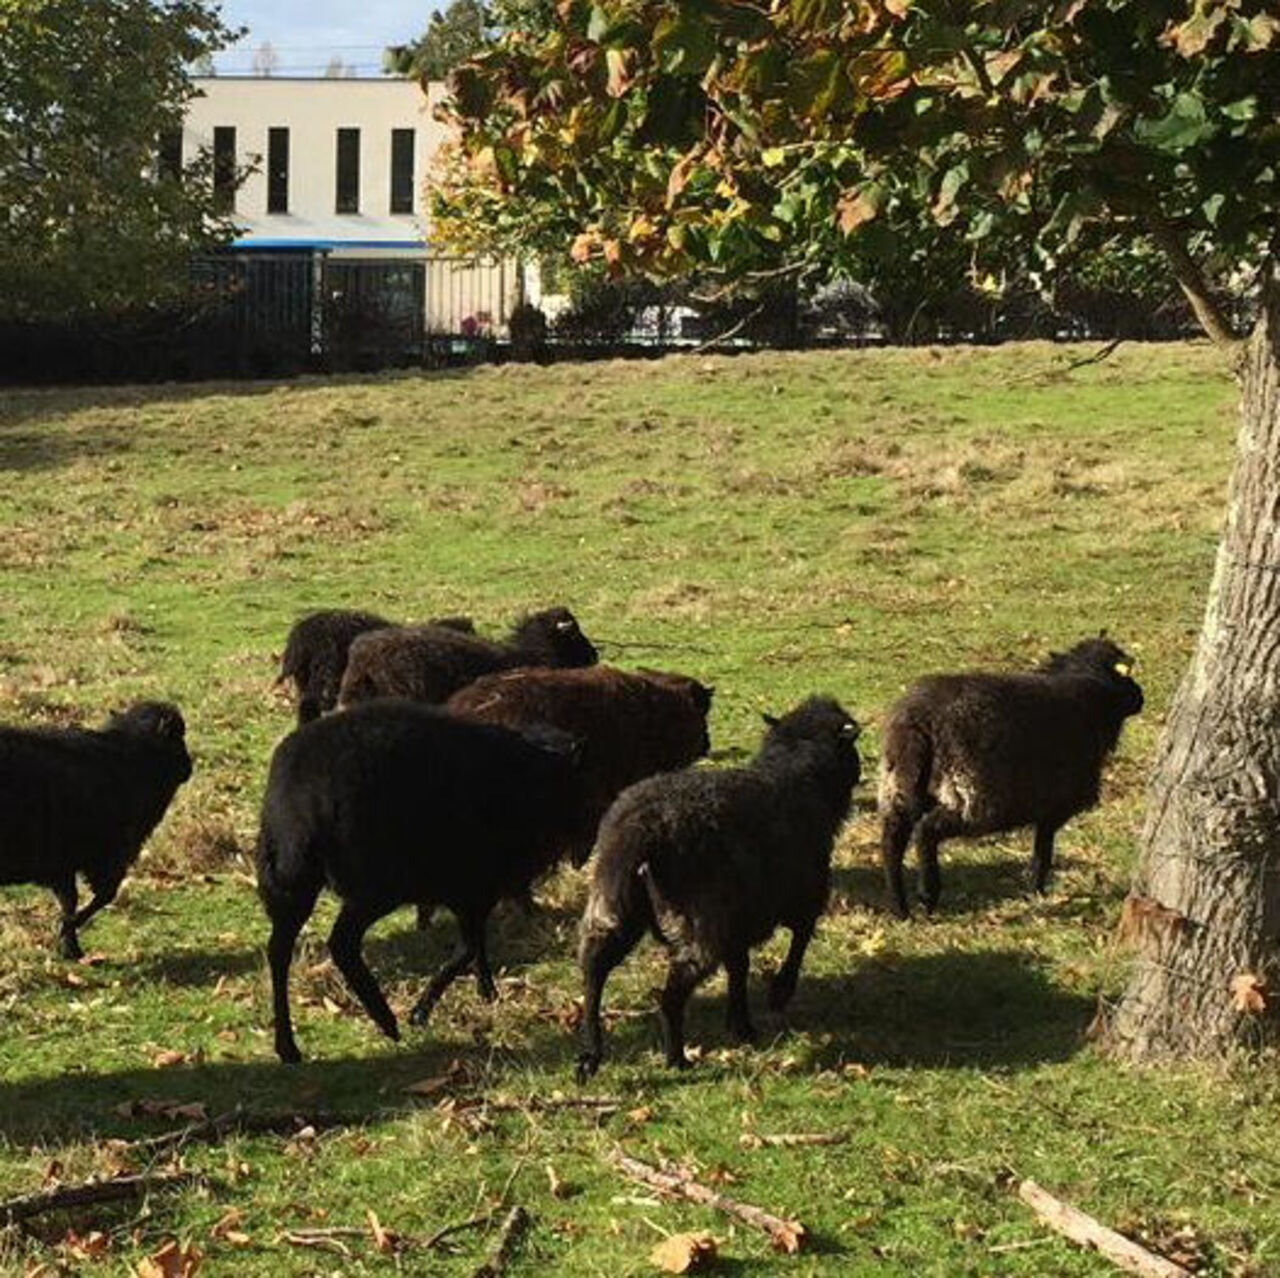 Moutons d'Ouessant en mission d'écopâturage à l'Ecole Centrale, Nantes. LAGARD, octobre 2019